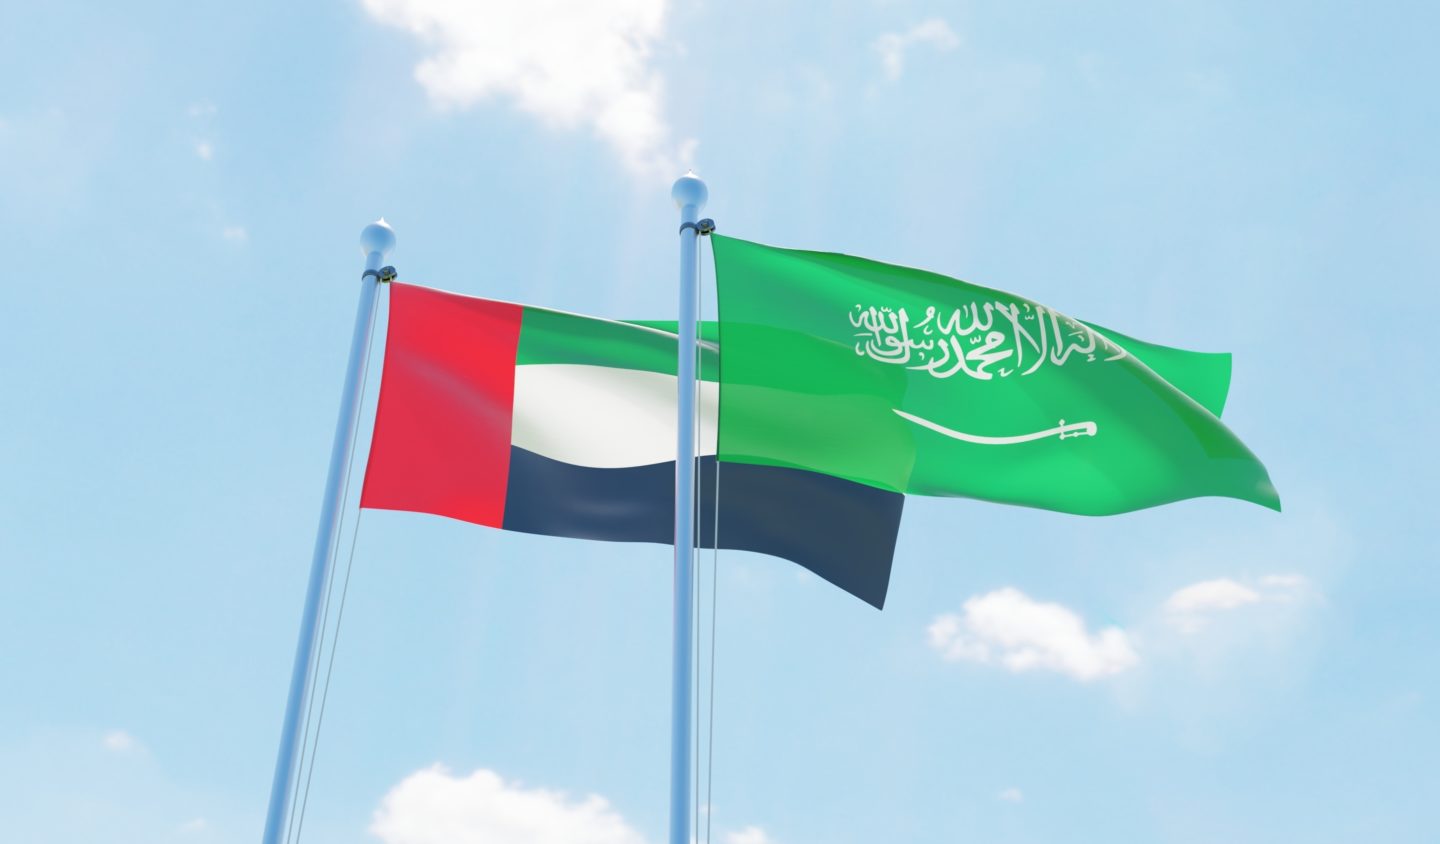 وكالة أنباء الإمارات - الإمارات ترحب بقرار السعودية قصر التسجيل للراغبين بأداء مناسك الحج للعام الجاري على المواطنين و المقيمين داخل المملكة - اخبار الامارات ENN